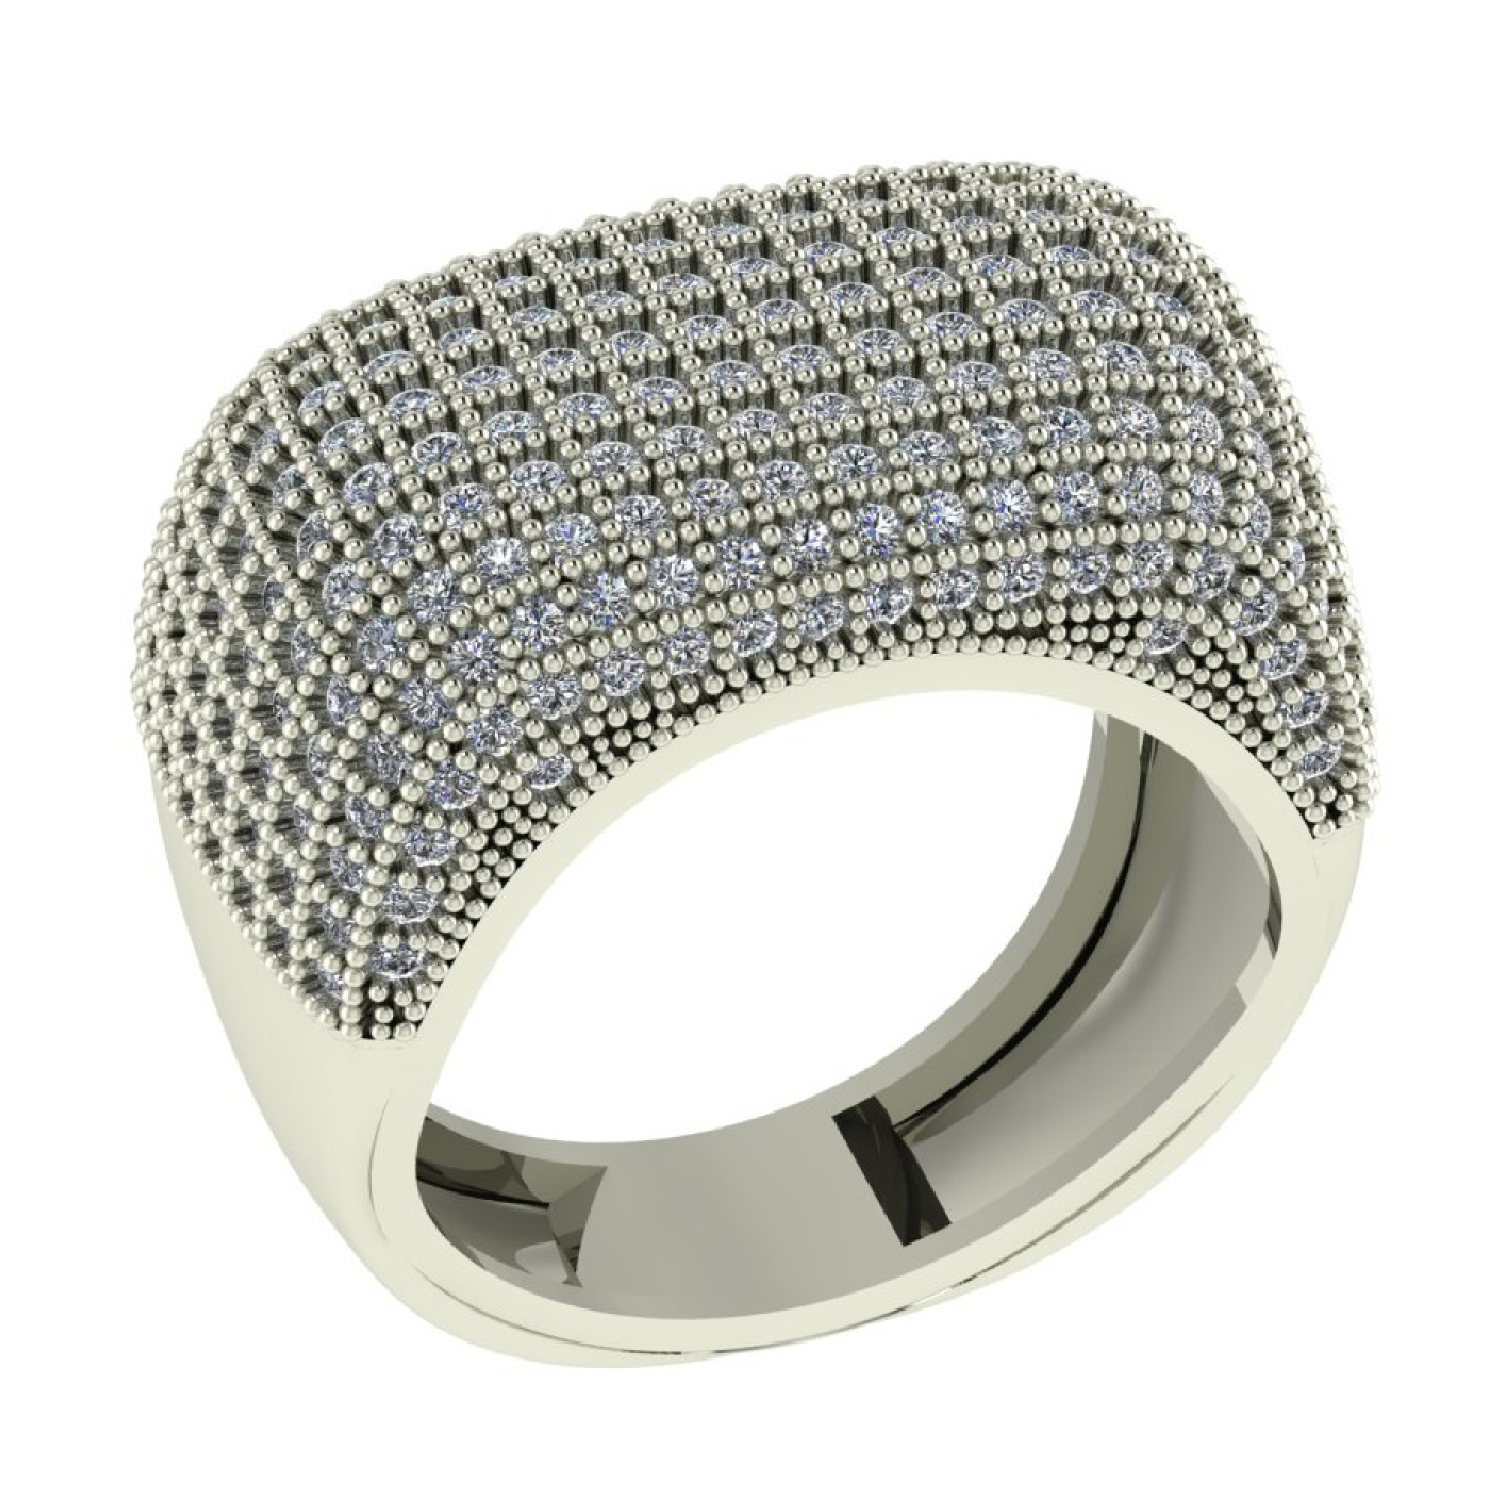 Luxurious Hip Hop Diamond Ring White Gold White Gold 24kdiamond